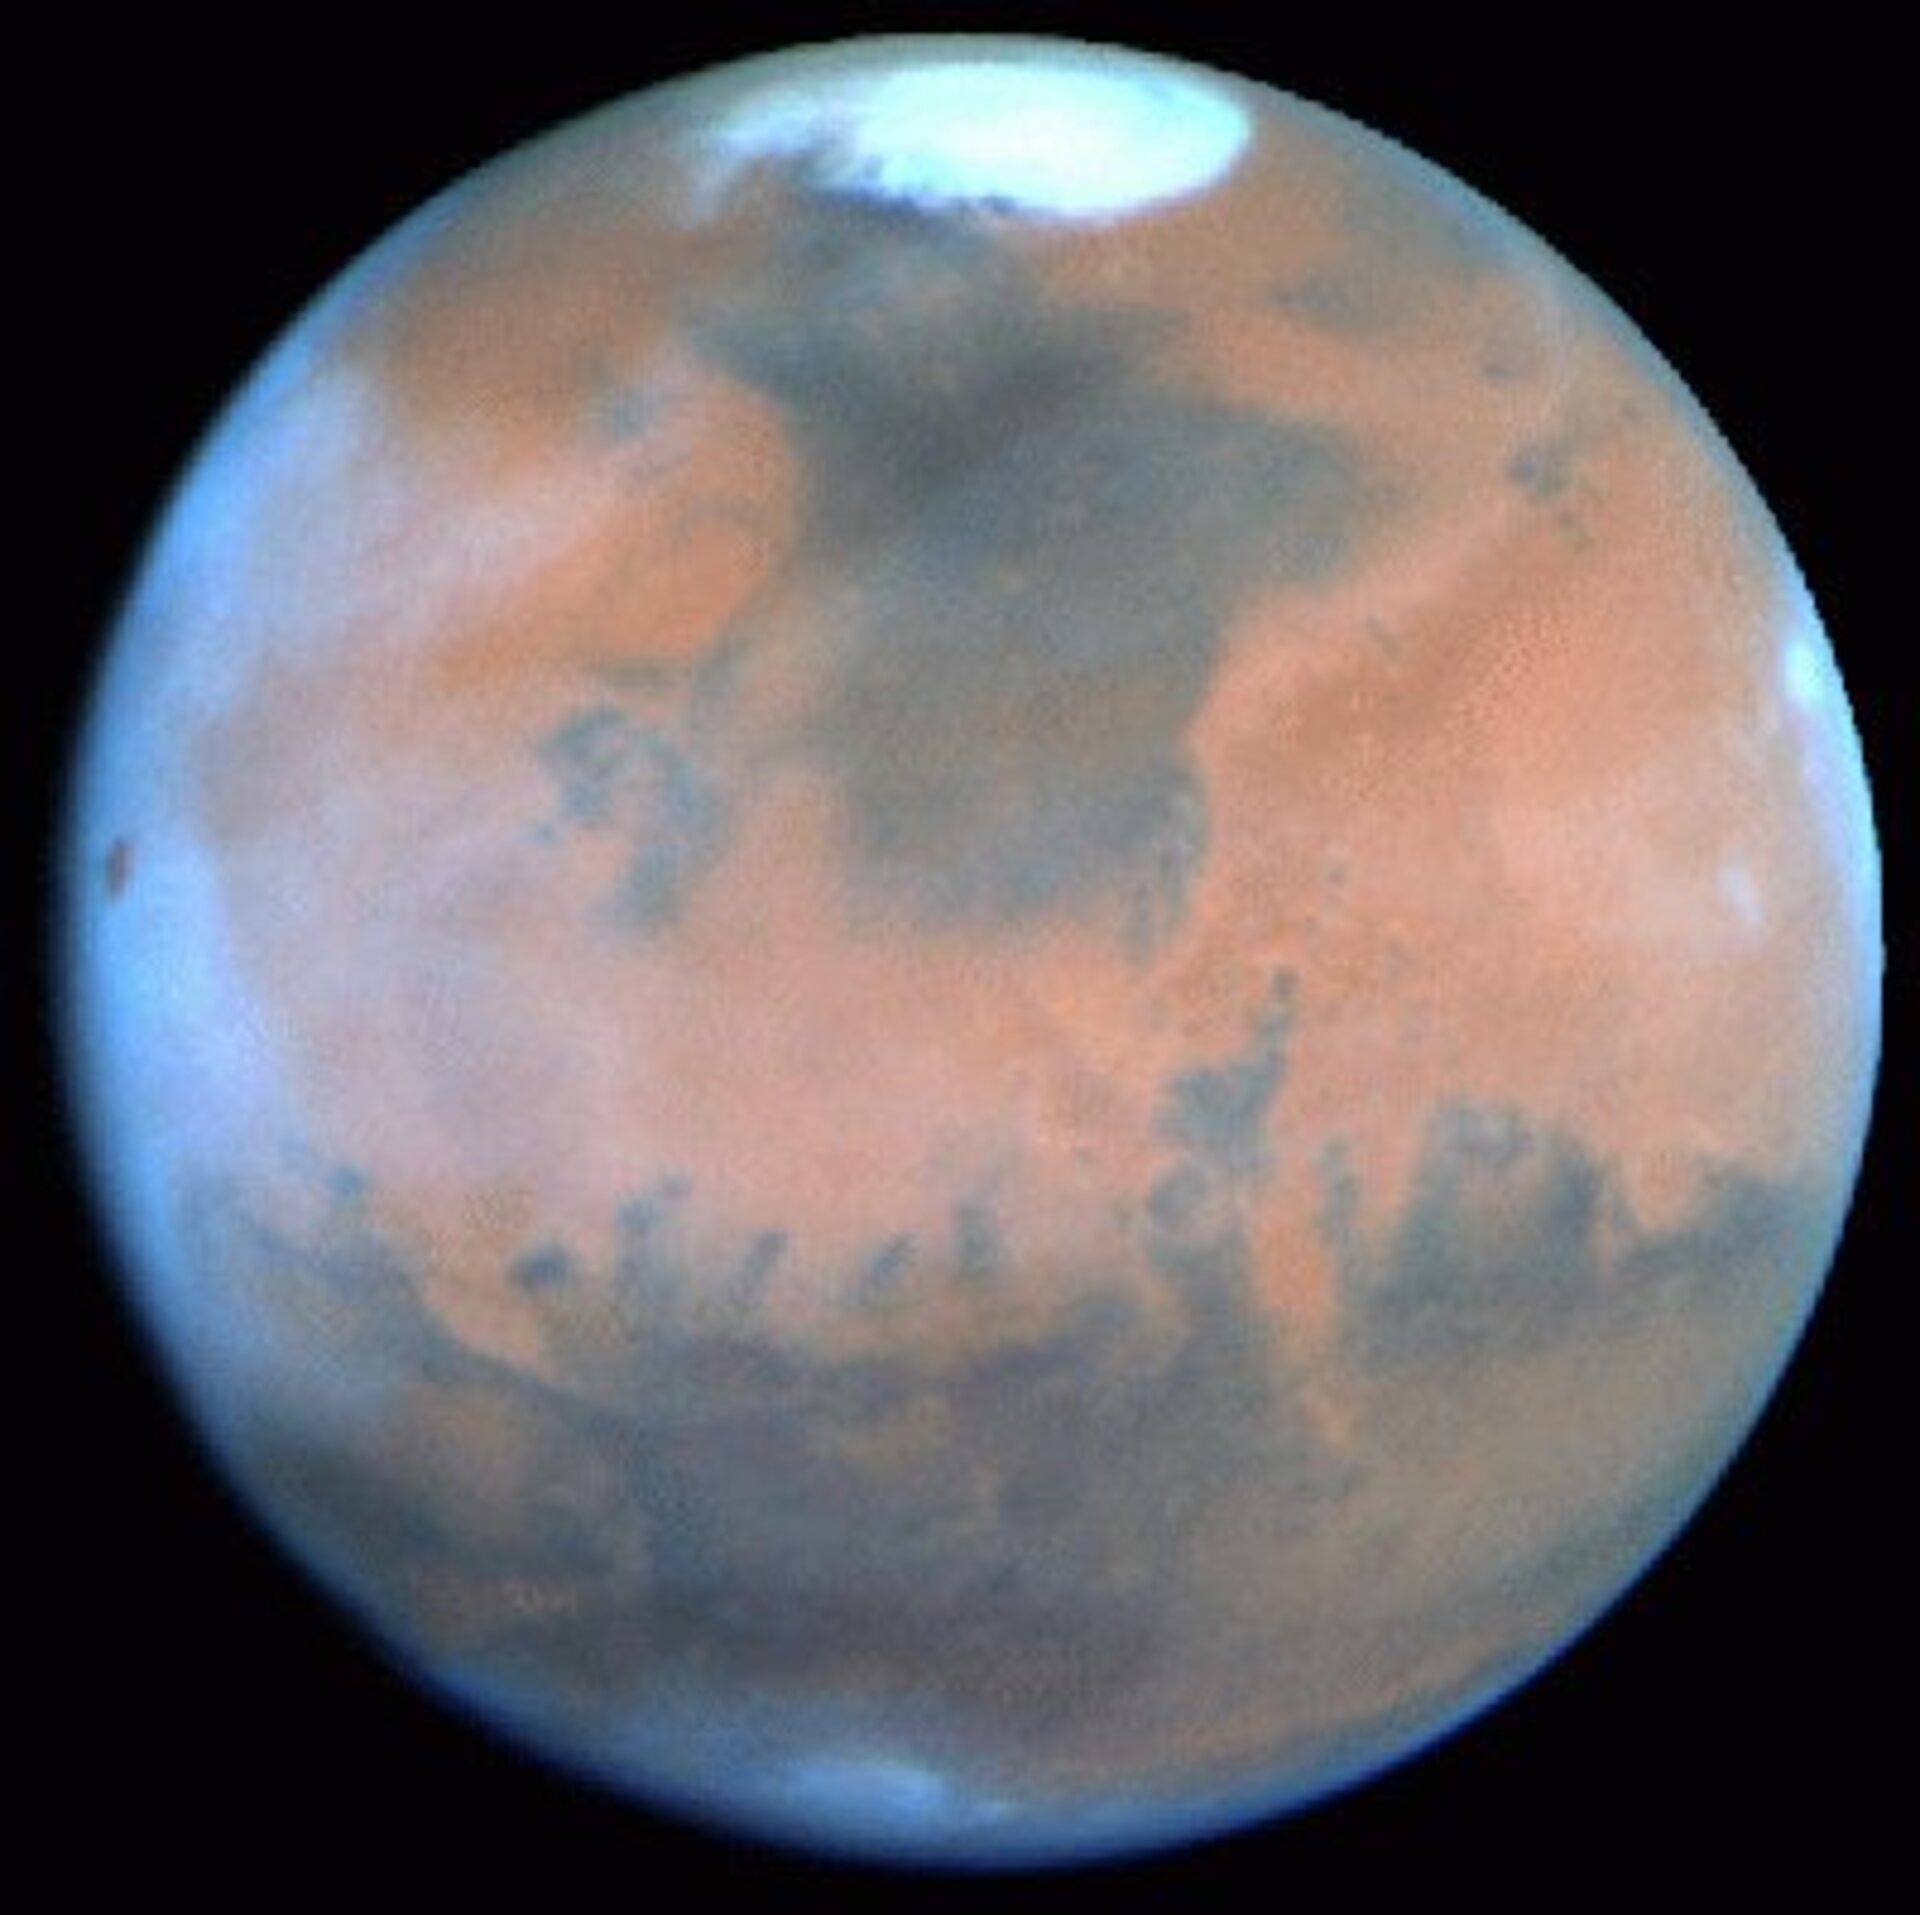 De komende weken is Mars zelfs met kleine telescopen uitstekend zichtbaar